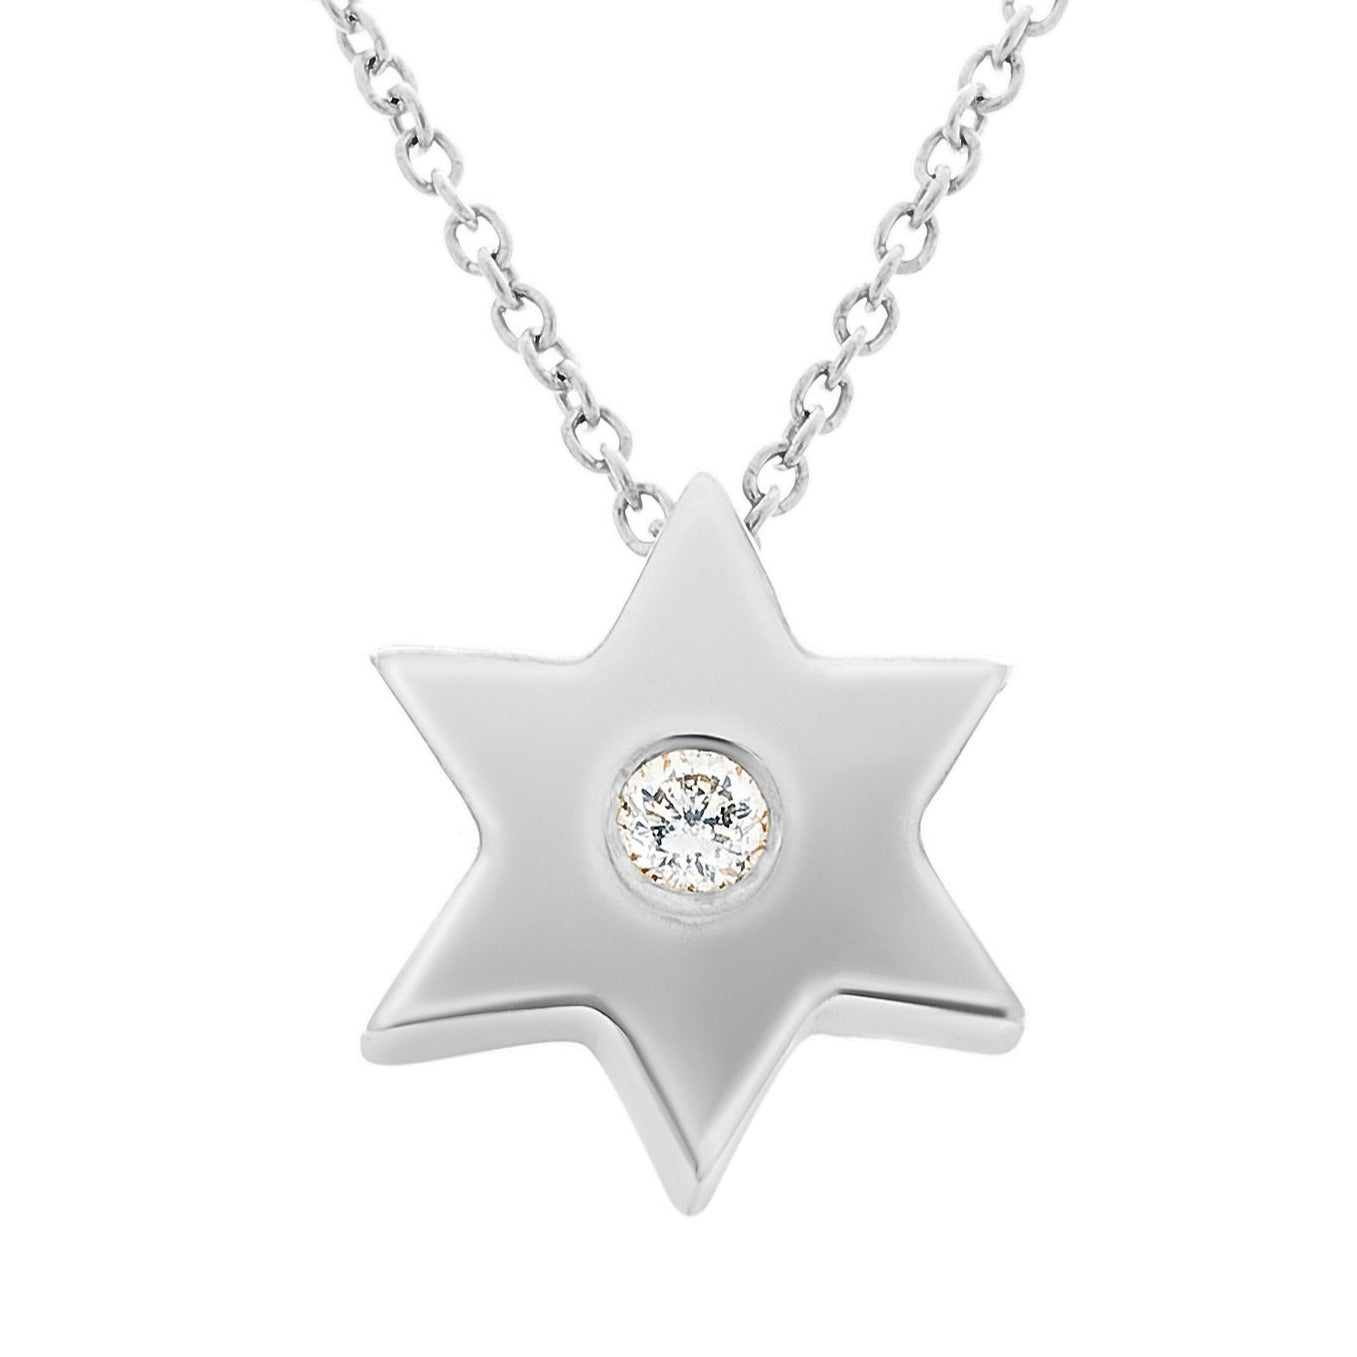 Gold Star Necklace with Single Diamond - Alef Bet Jewelry by Paula